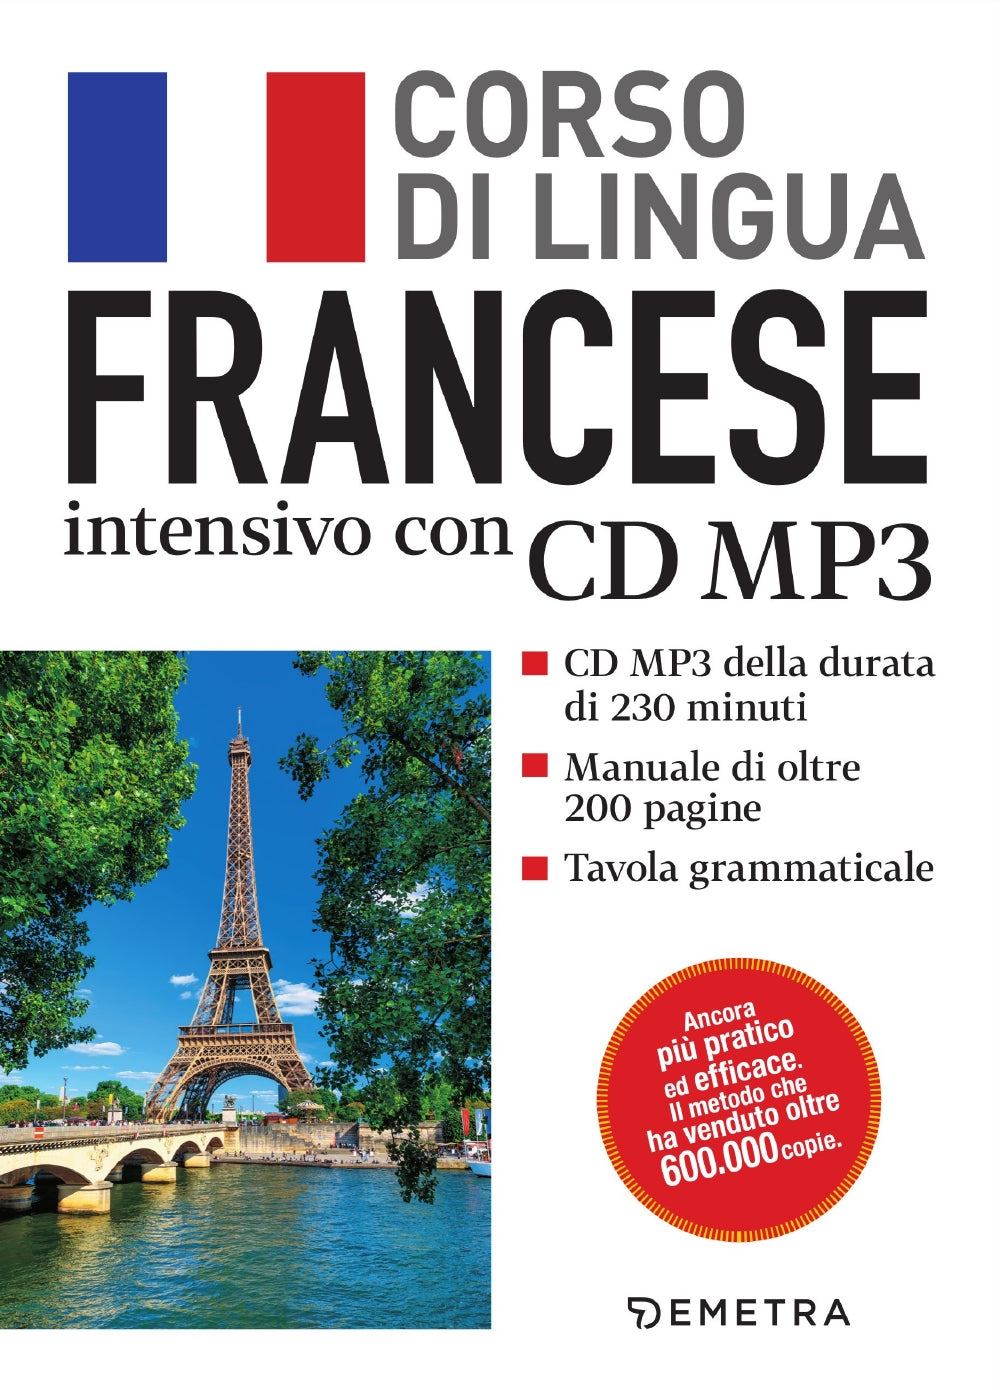 Francese. Corso di lingua intensivo con CD MP3. CD MP3 della durata di 230 minuti - Manuale di oltre 200 pagine - Tavola grammaticale